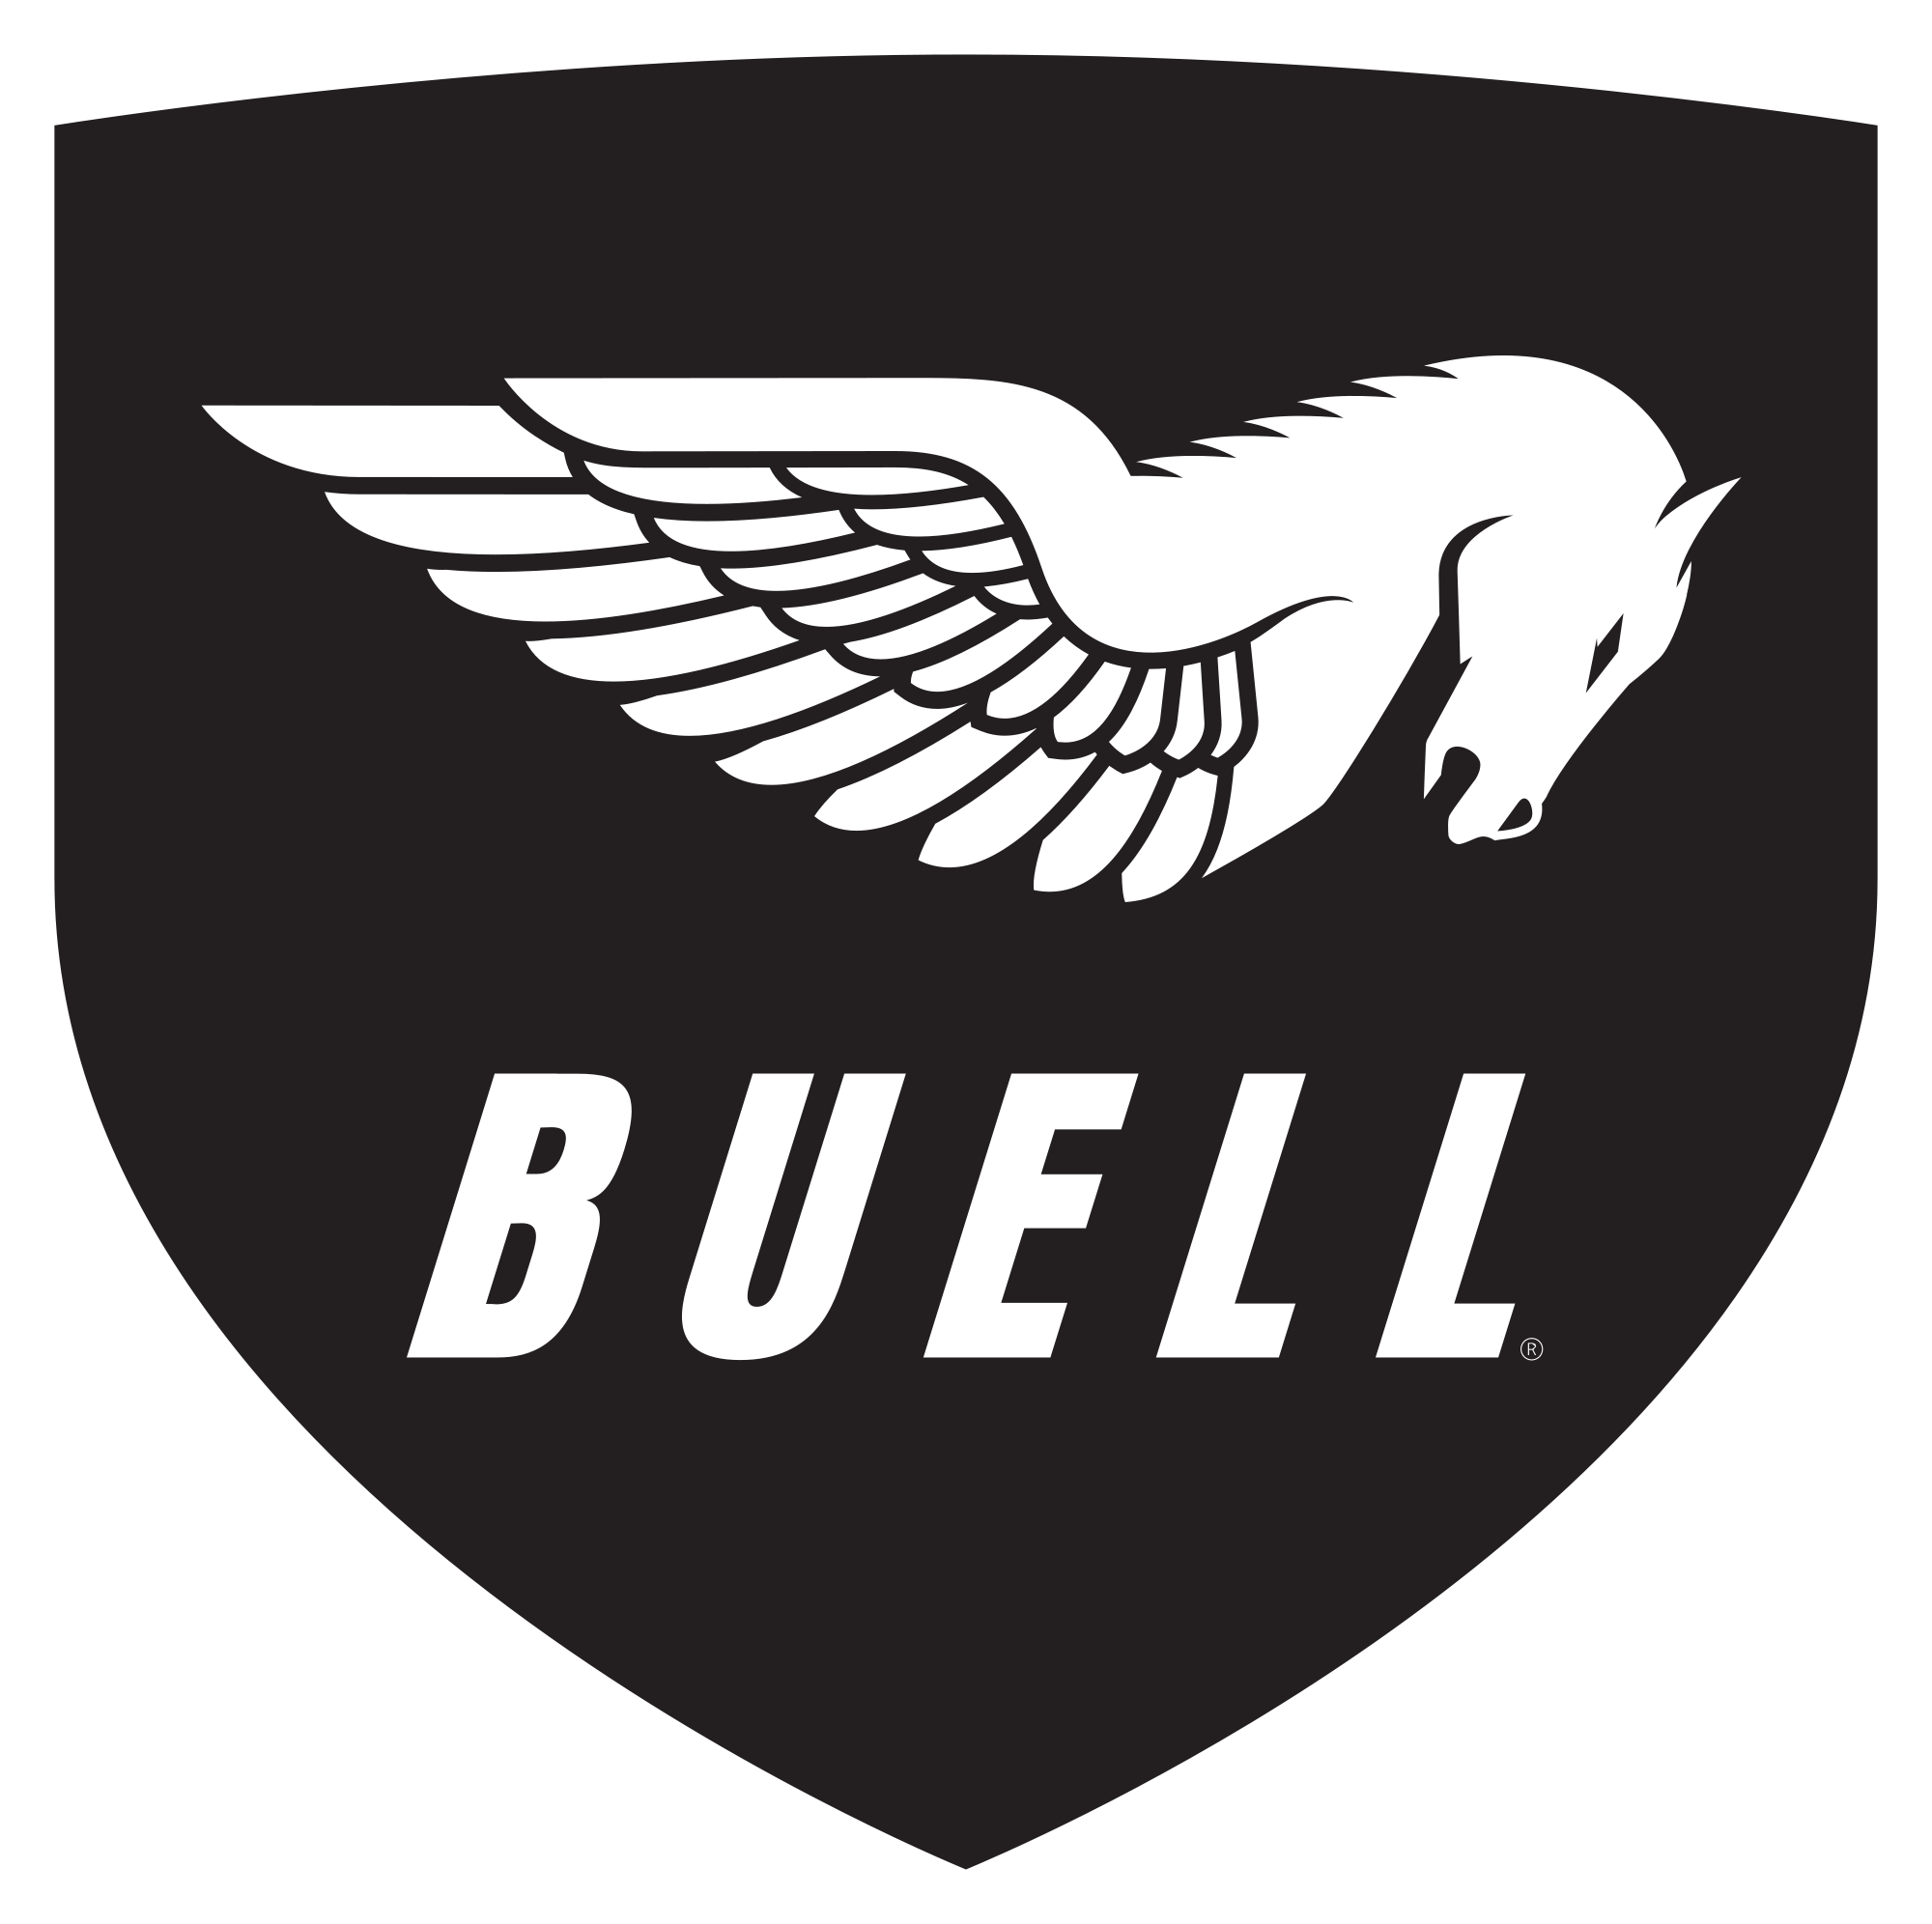 Buell®